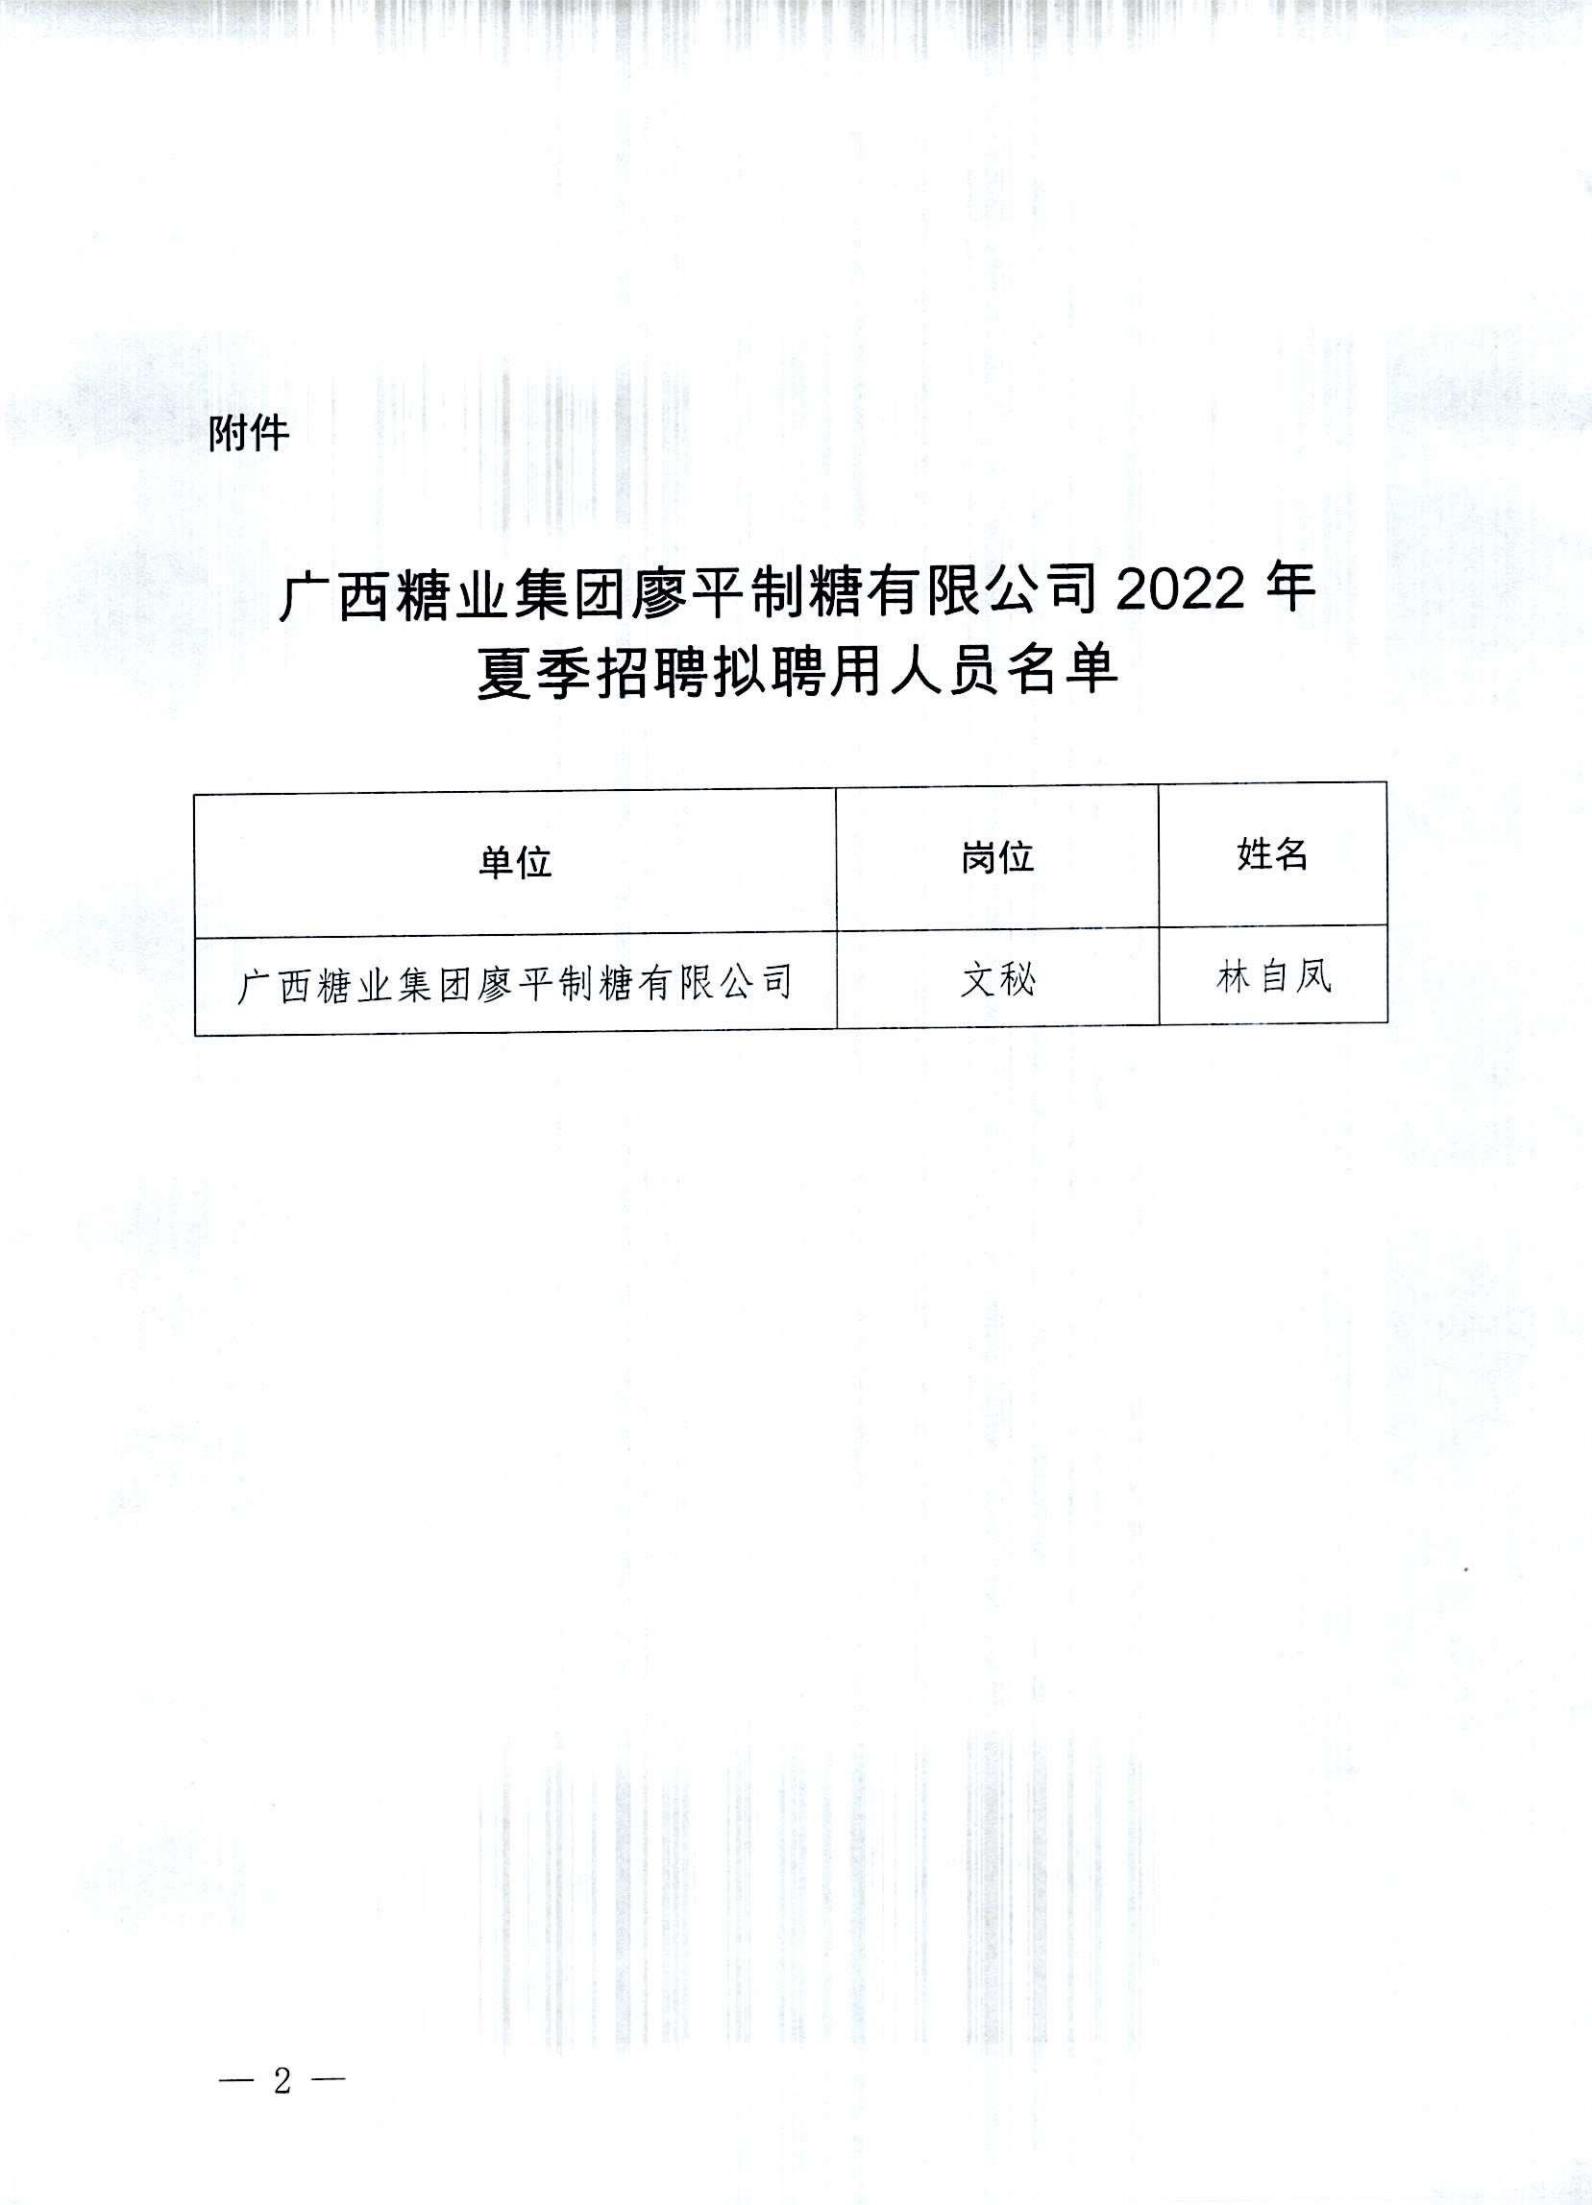 3  江南平台(中国)有限公司廖平制糖有限公司2022年夏季招聘拟聘用人员名单公示(1)_01.jpg